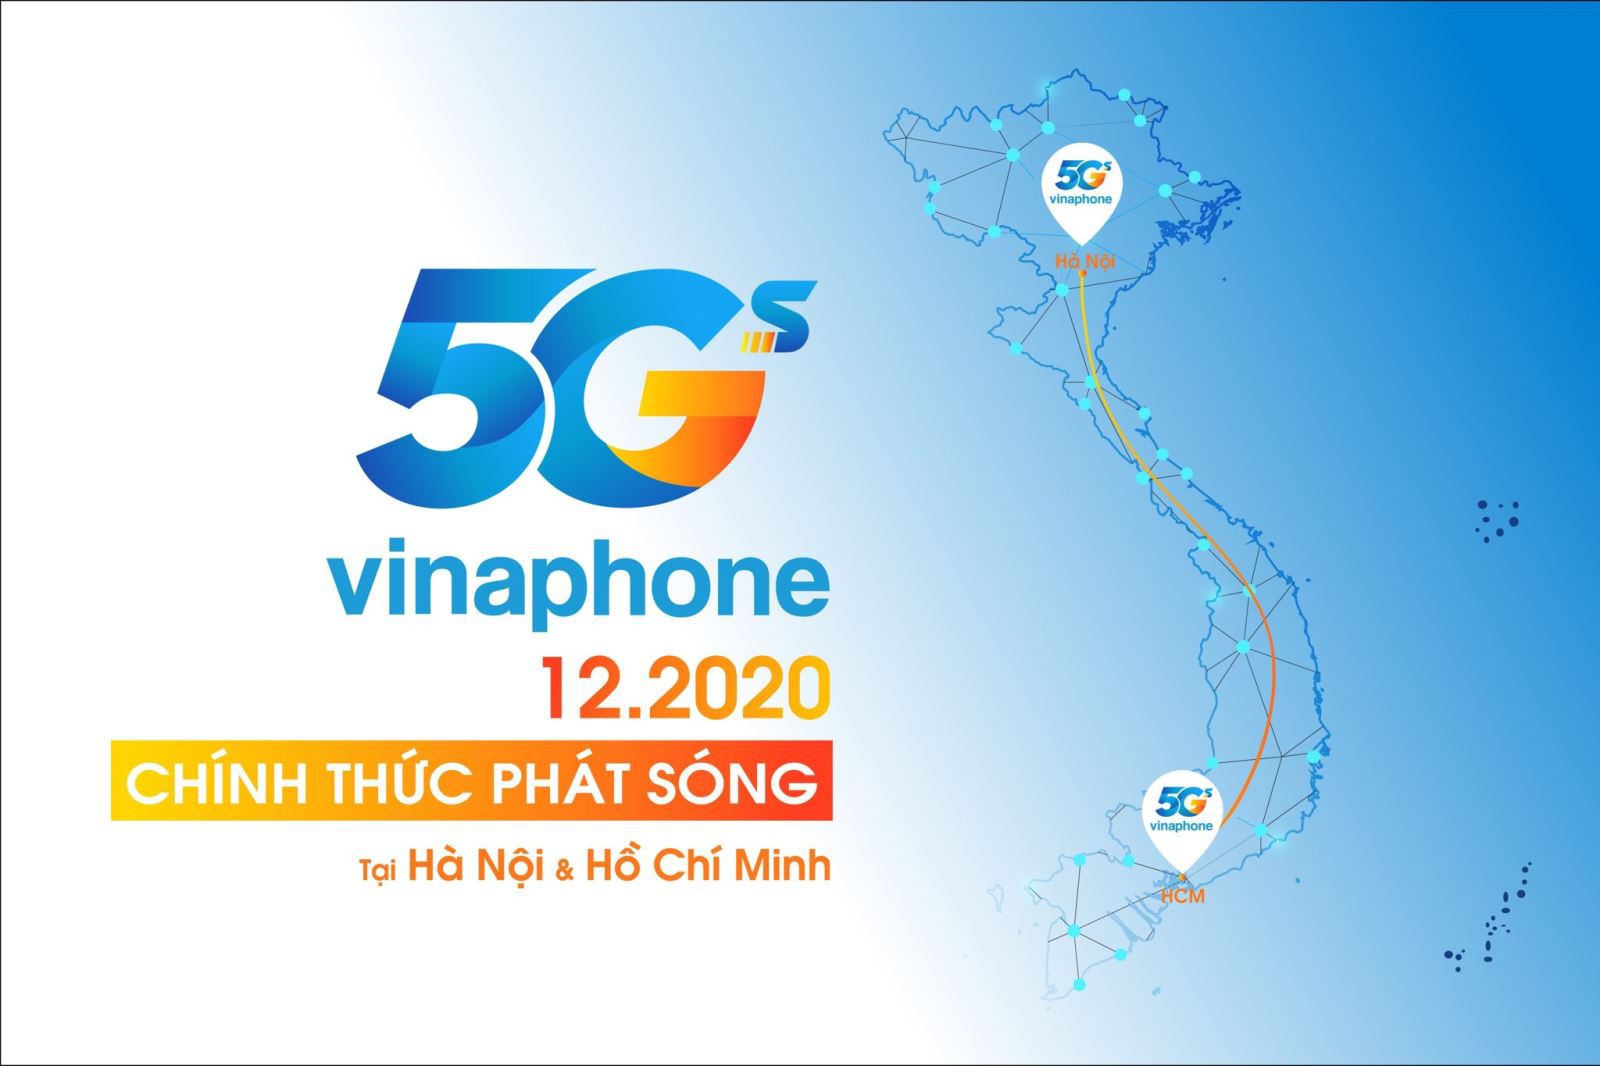 Bao giờ có mạng 5G ở Việt Nam?  Làm thế nào để sử dụng 5G?  5